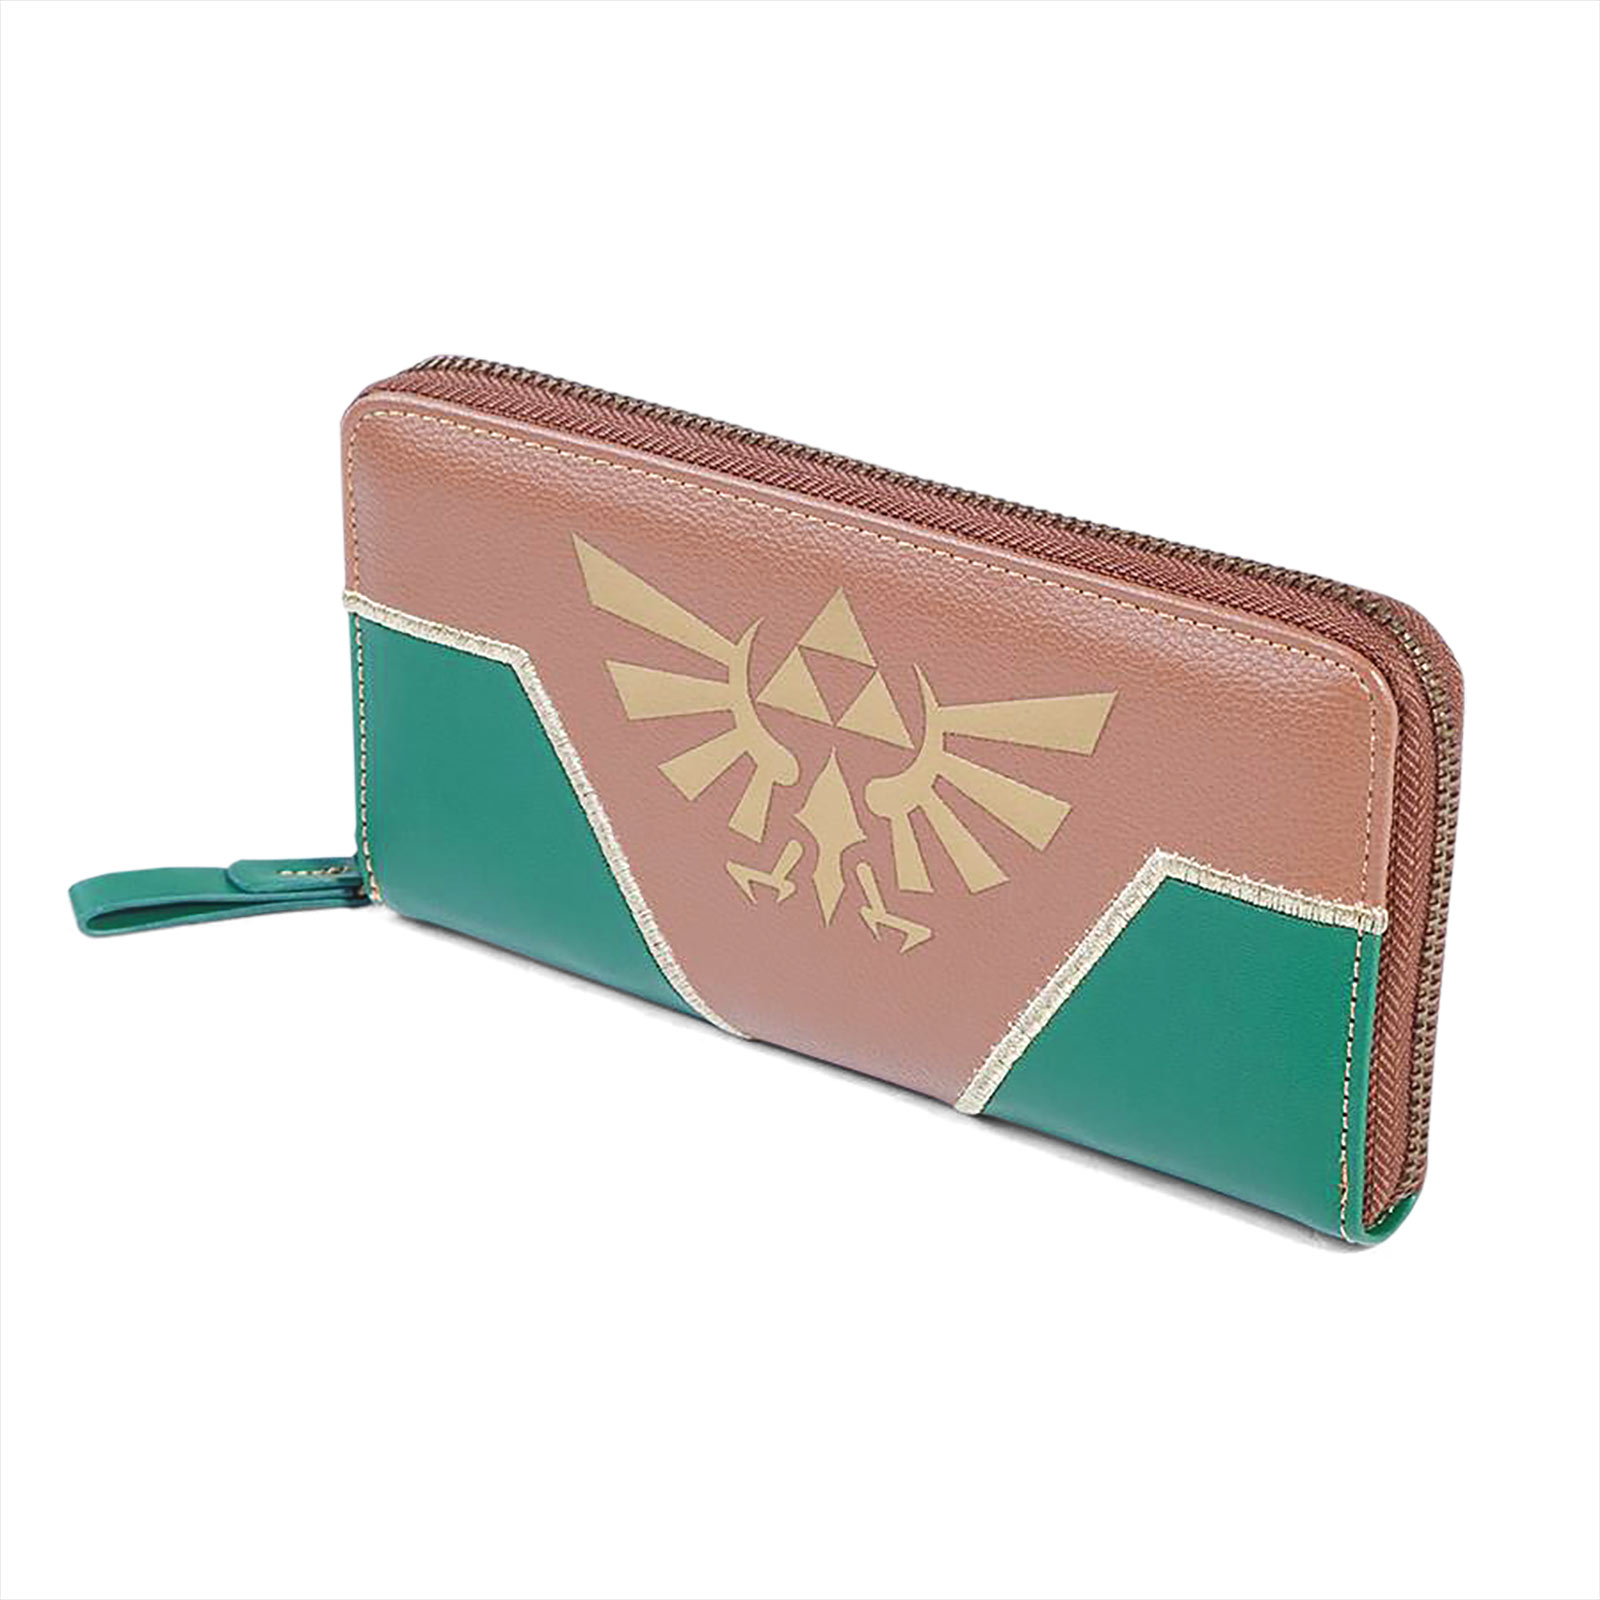 Zelda - Hyrule Logo Wallet green-brown